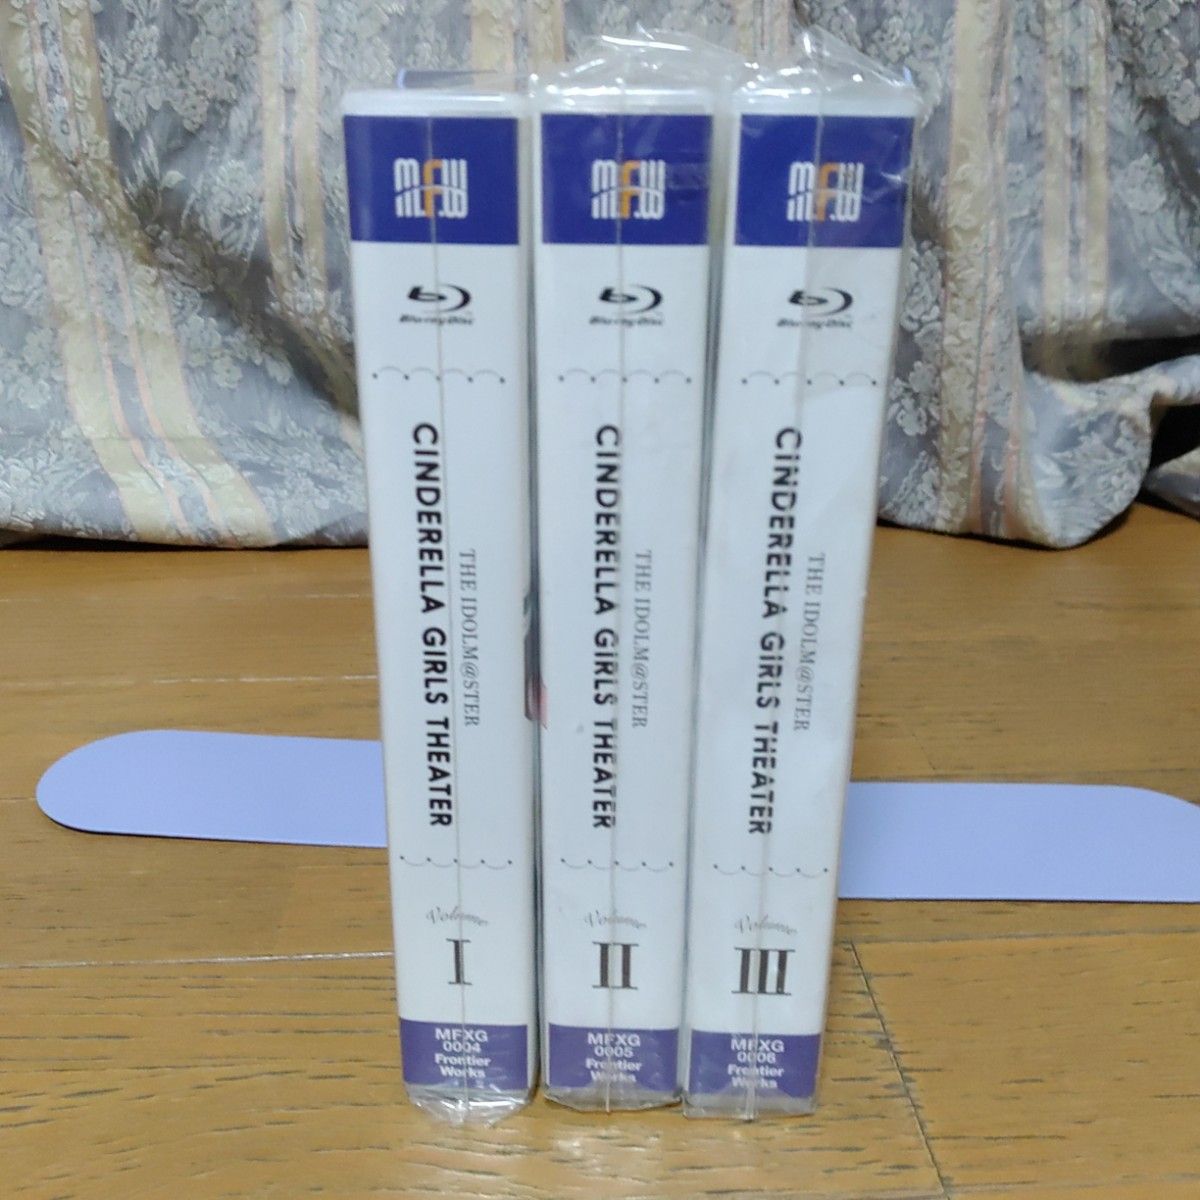 アイドルマスター シンデレラガールズ劇場  1巻から3巻 (Blu-ray Disc) ＋CD80枚セット